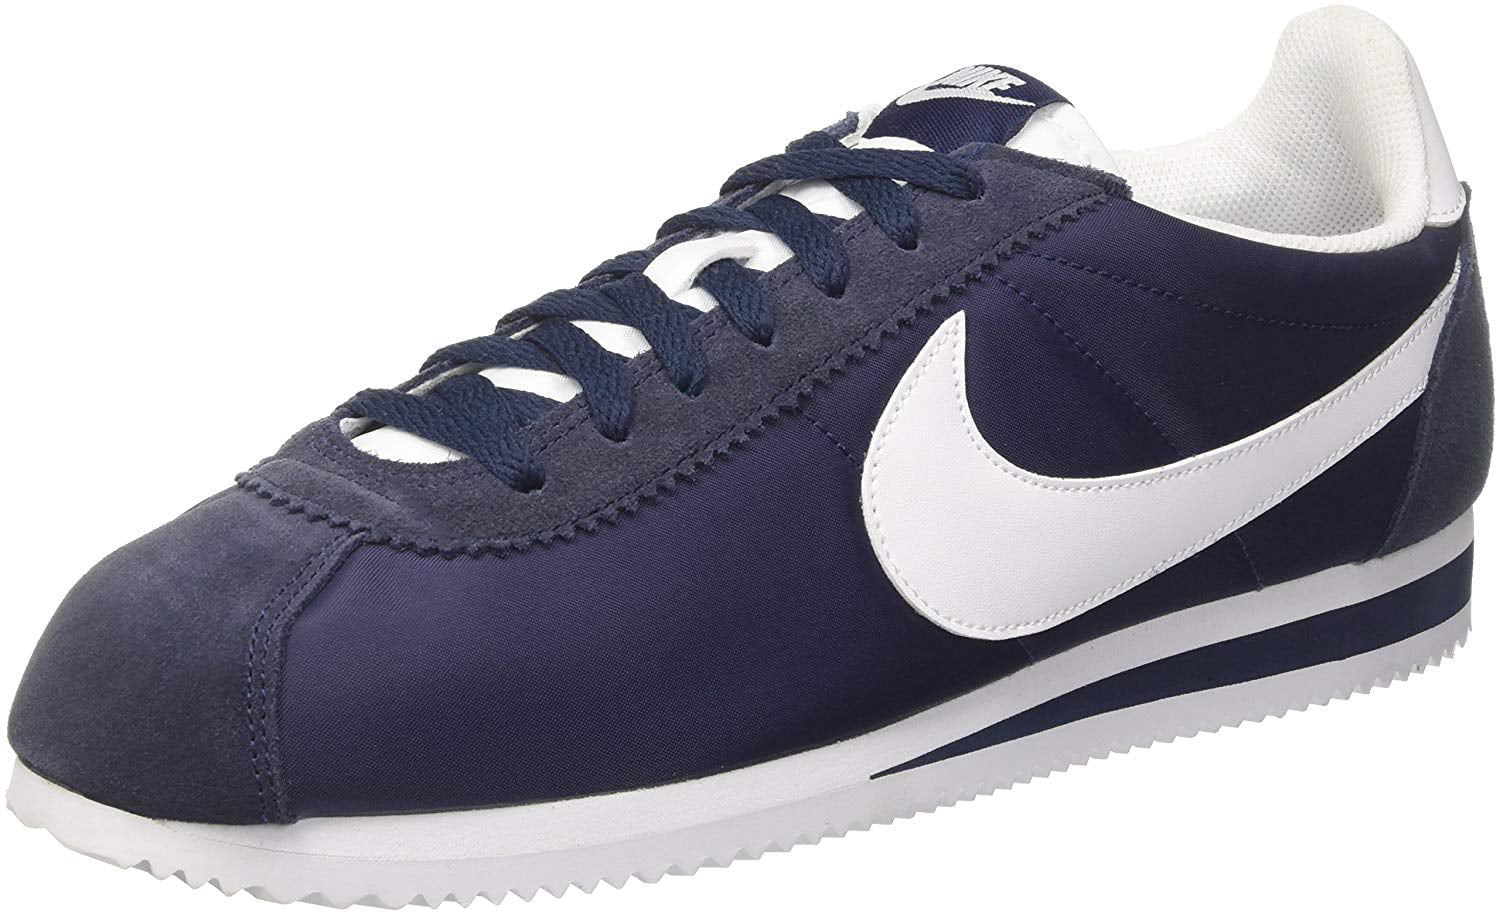 Silenciosamente Grande Disipar Nike Classic Cortez Nylon Trainer, Obsidian Blue/White, 11.5 - Walmart.com